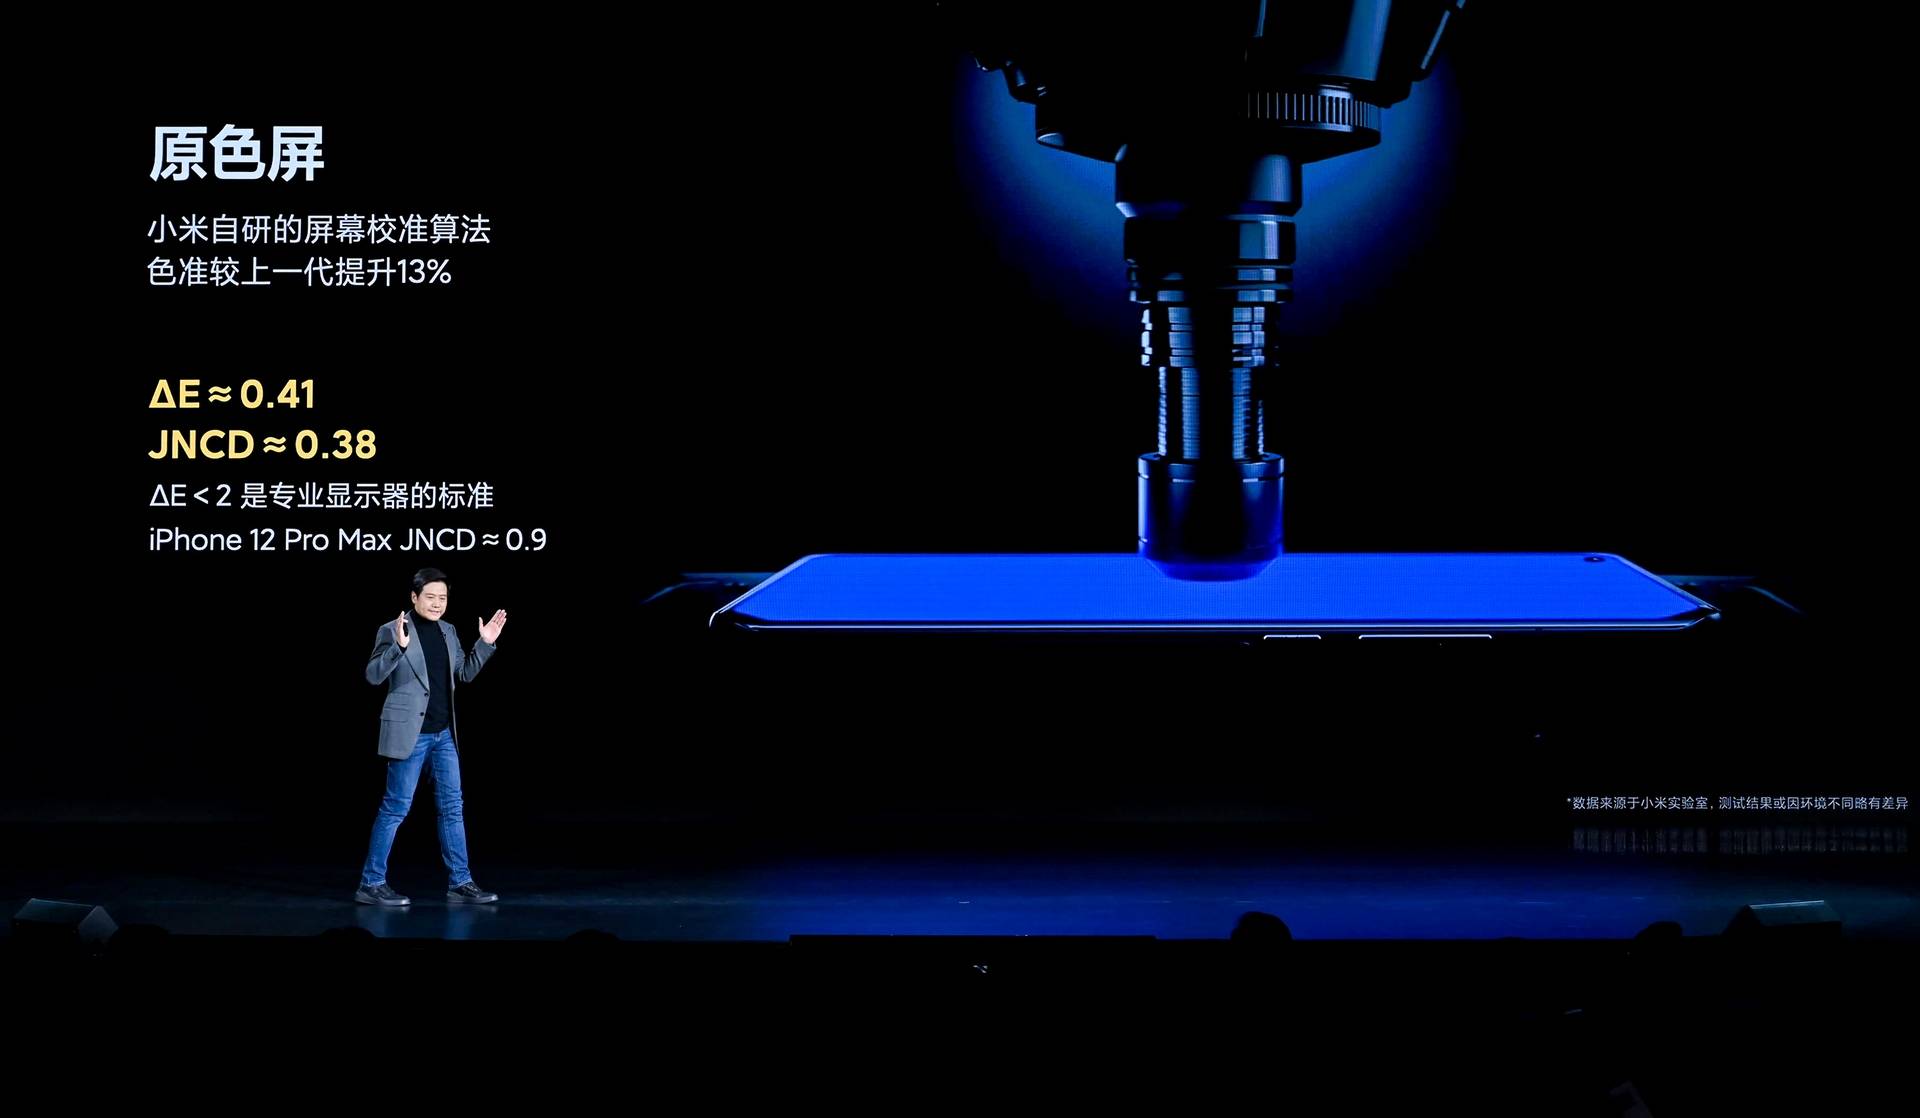 2001609160287 .pic hd - Conferenza Xiaomi Mi 11: Mi 11 offre le prestazioni più forti e lo schermo migliore, MIUI 12.5 è il corpo completo